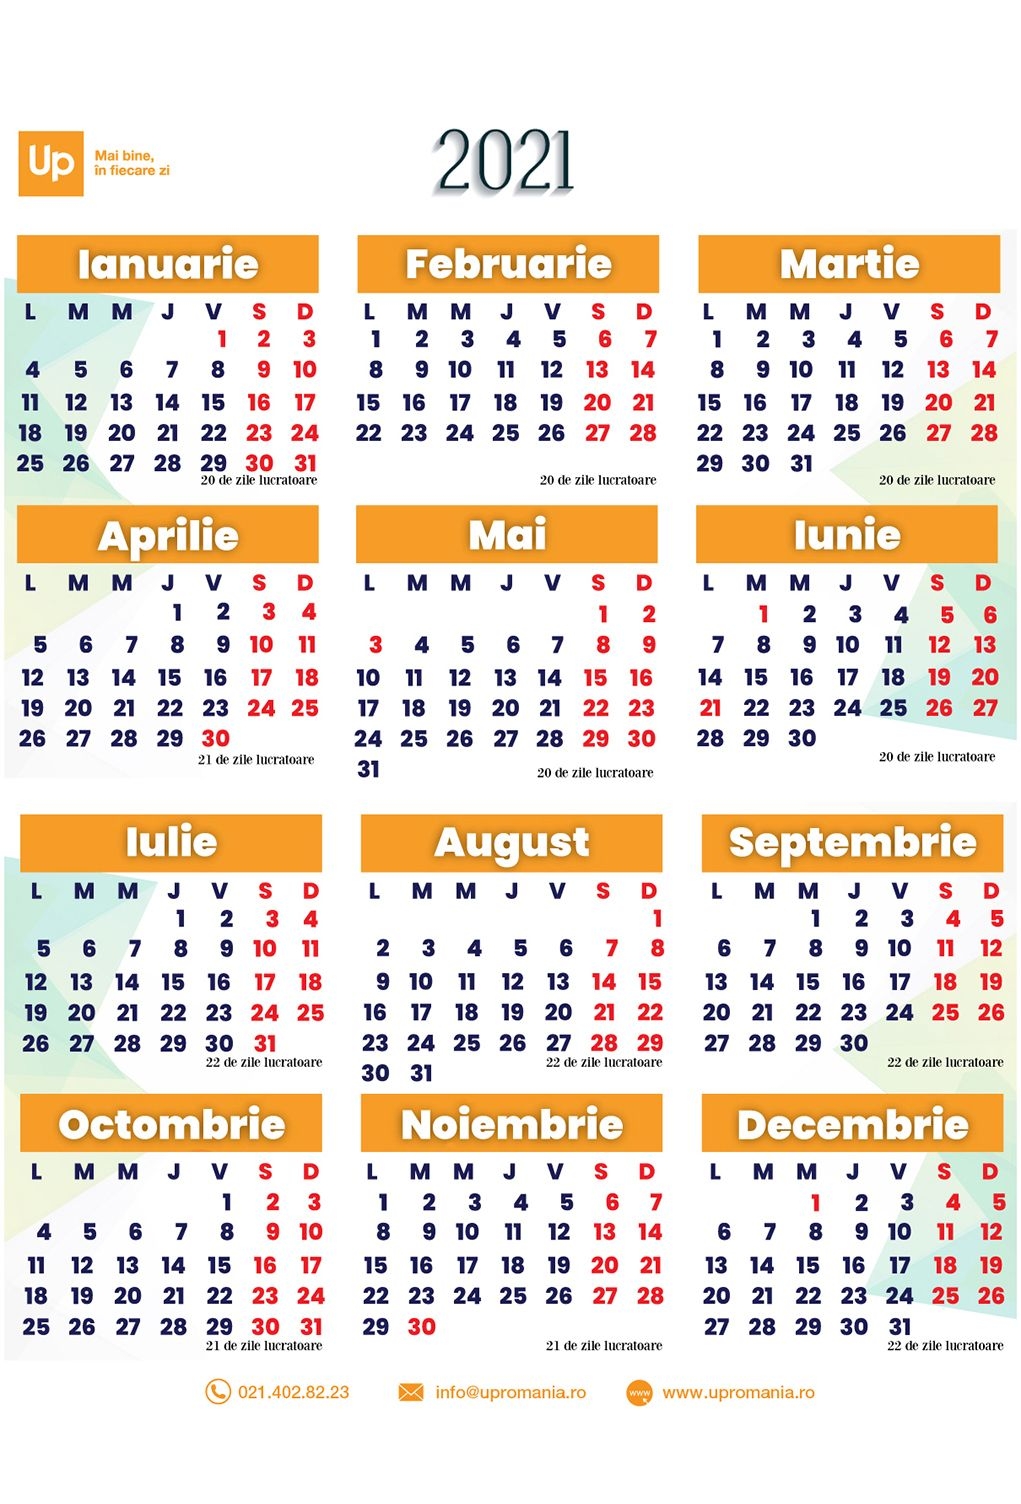 Calendar Zile Lucratoare 2021 | Up Romania